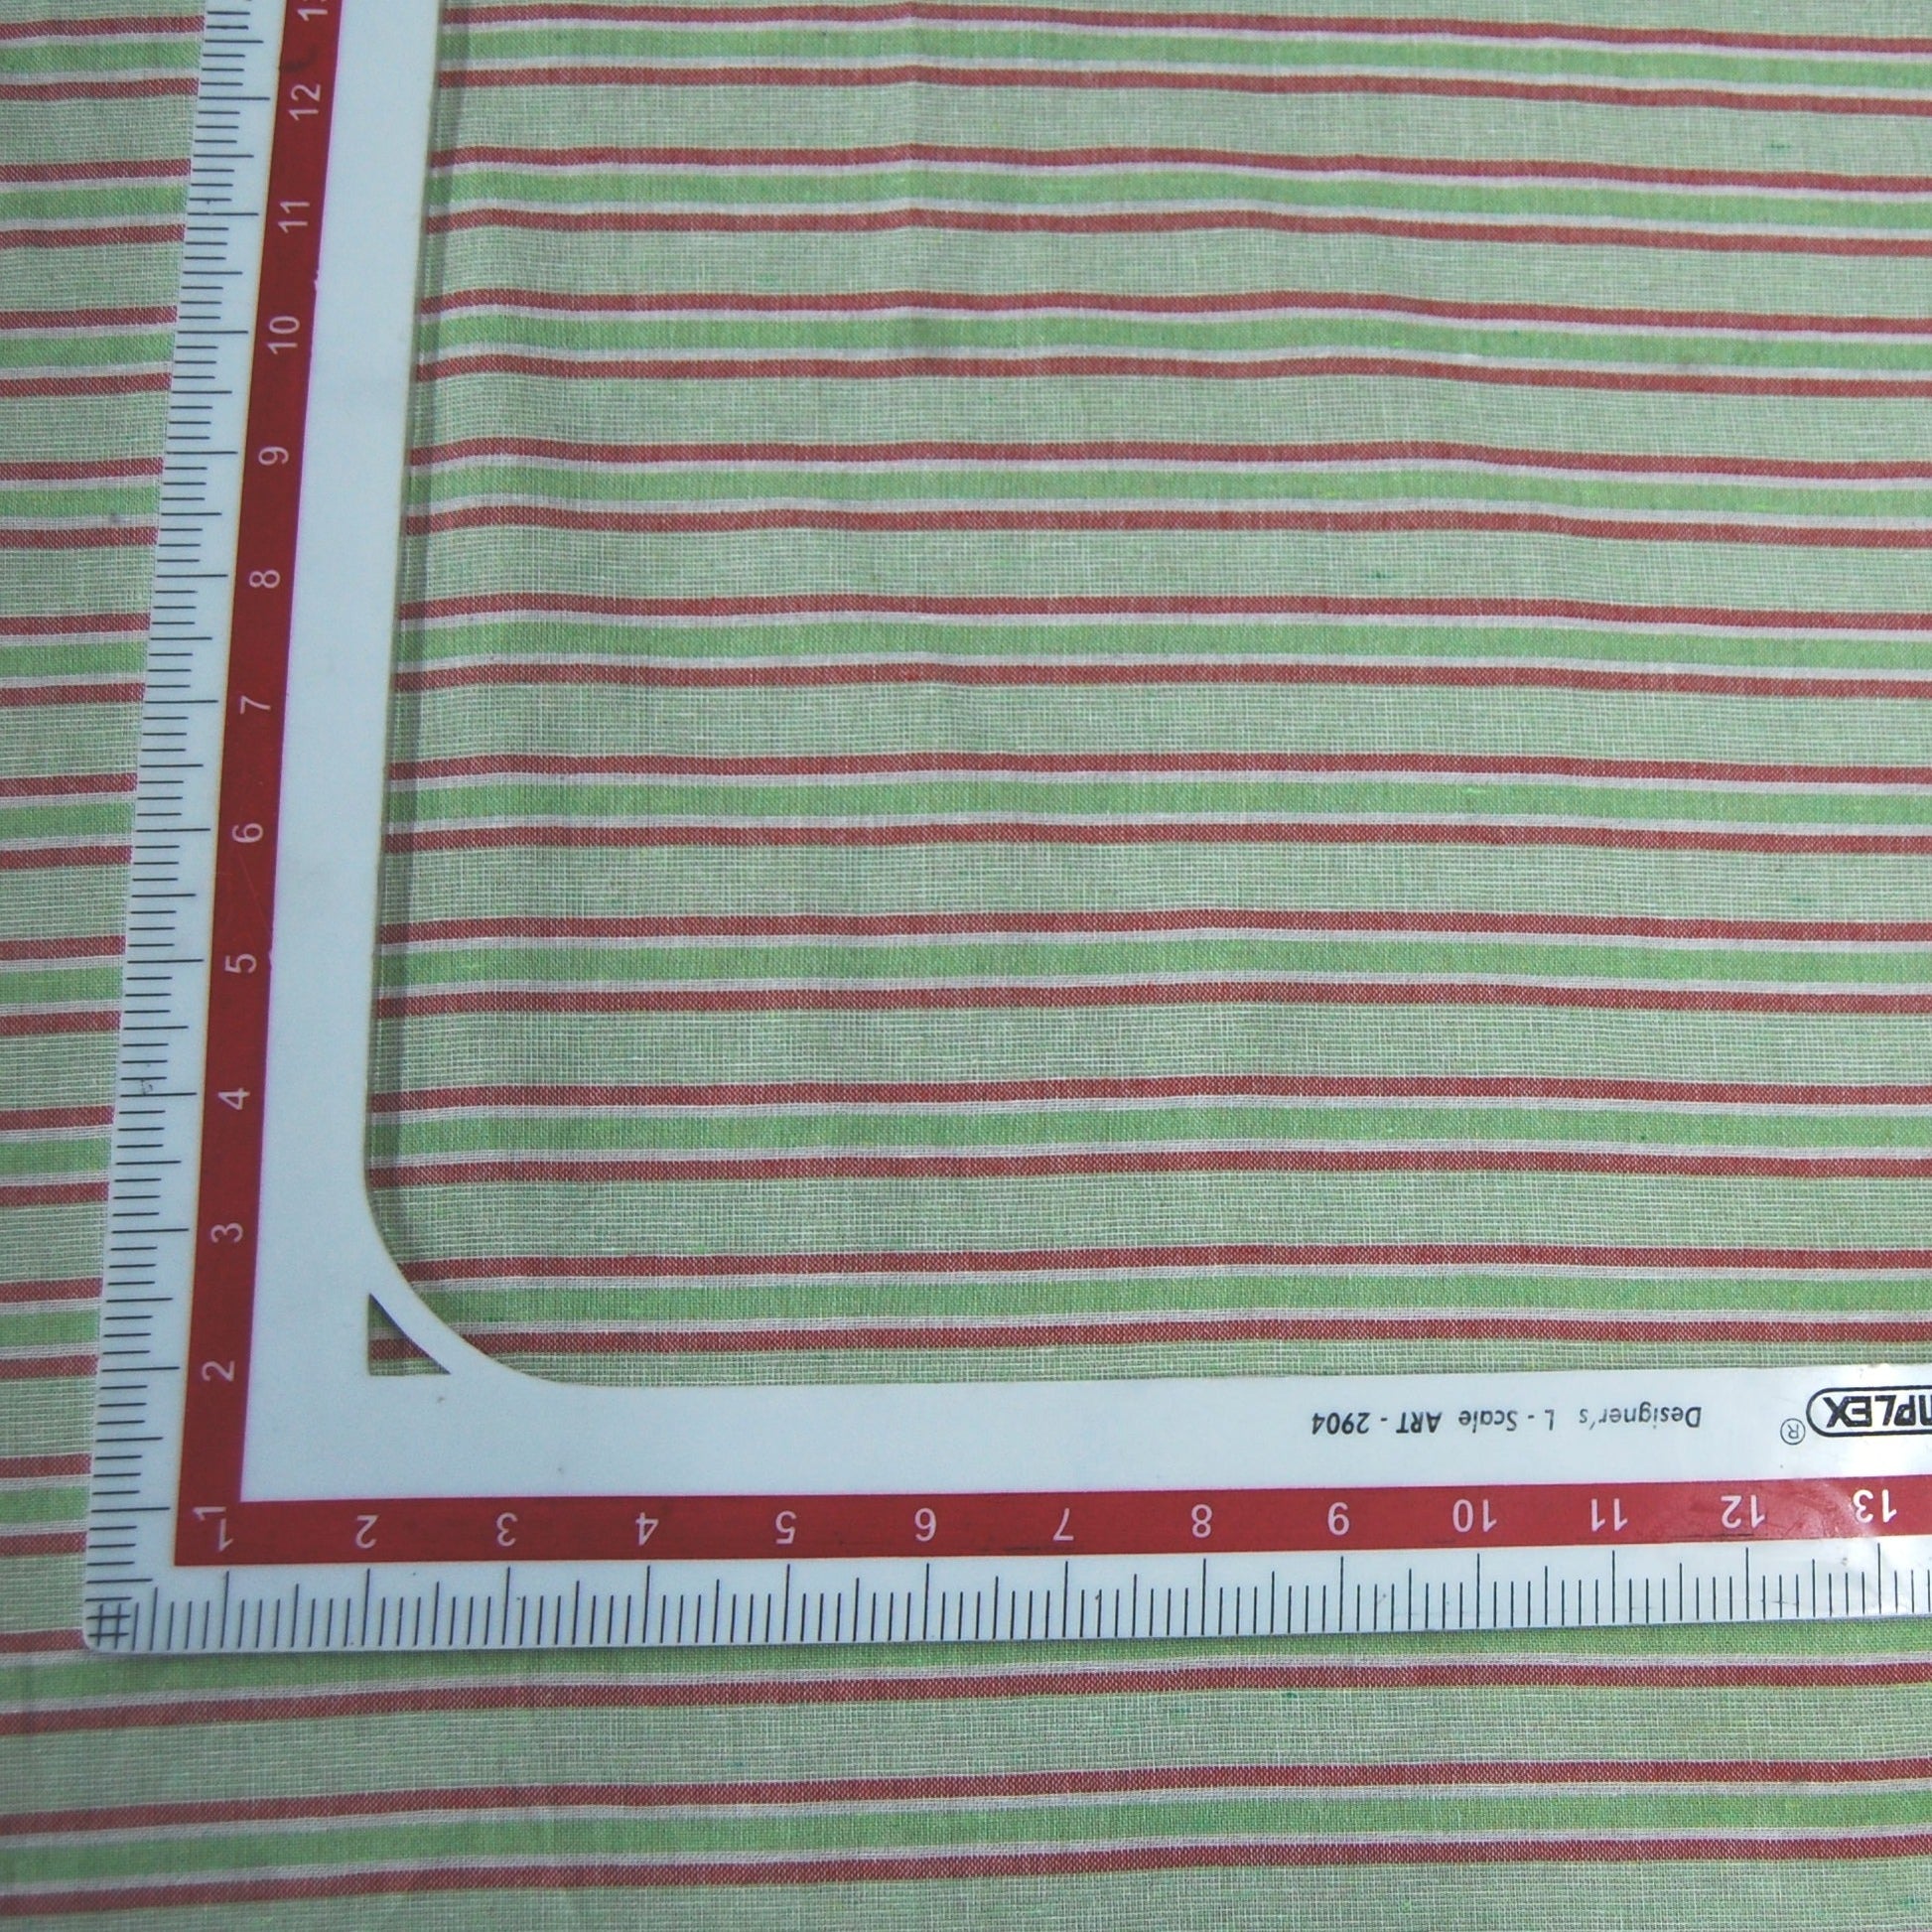 Green Stripe South Cotton Fabric Trade UNO